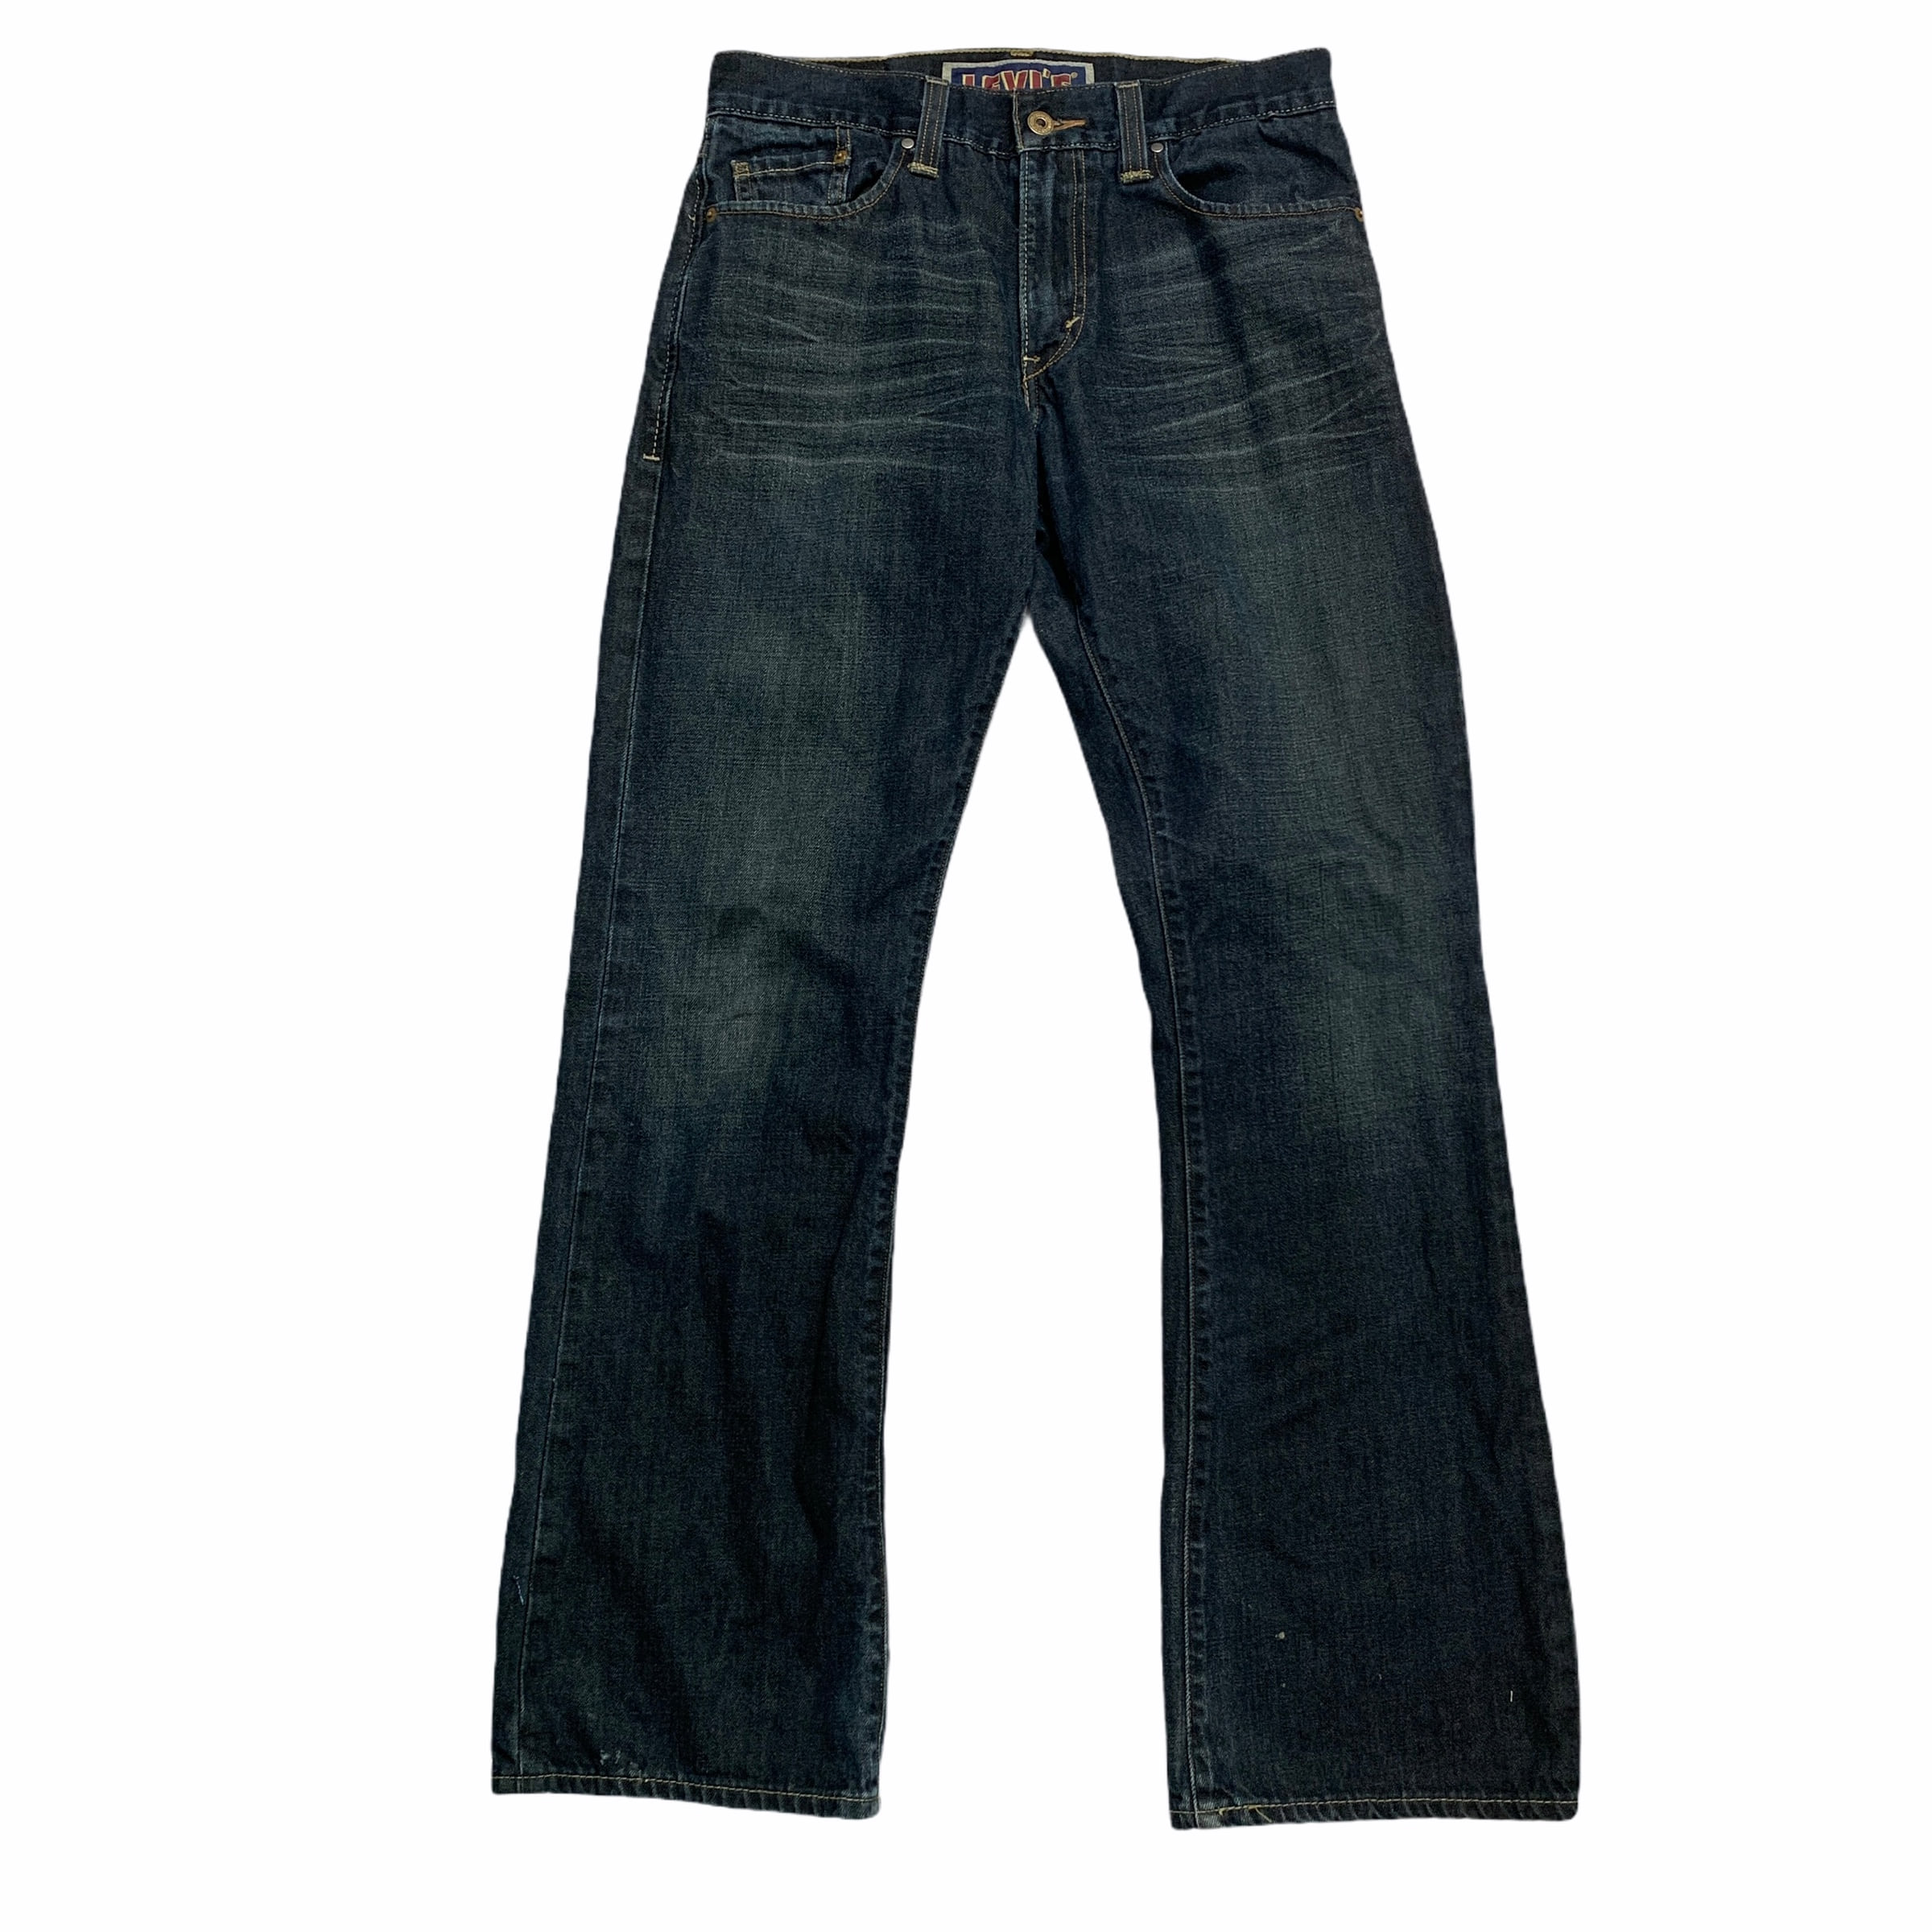 [Levis] (Vintage) 527 Original Denim pants - Size 30/32